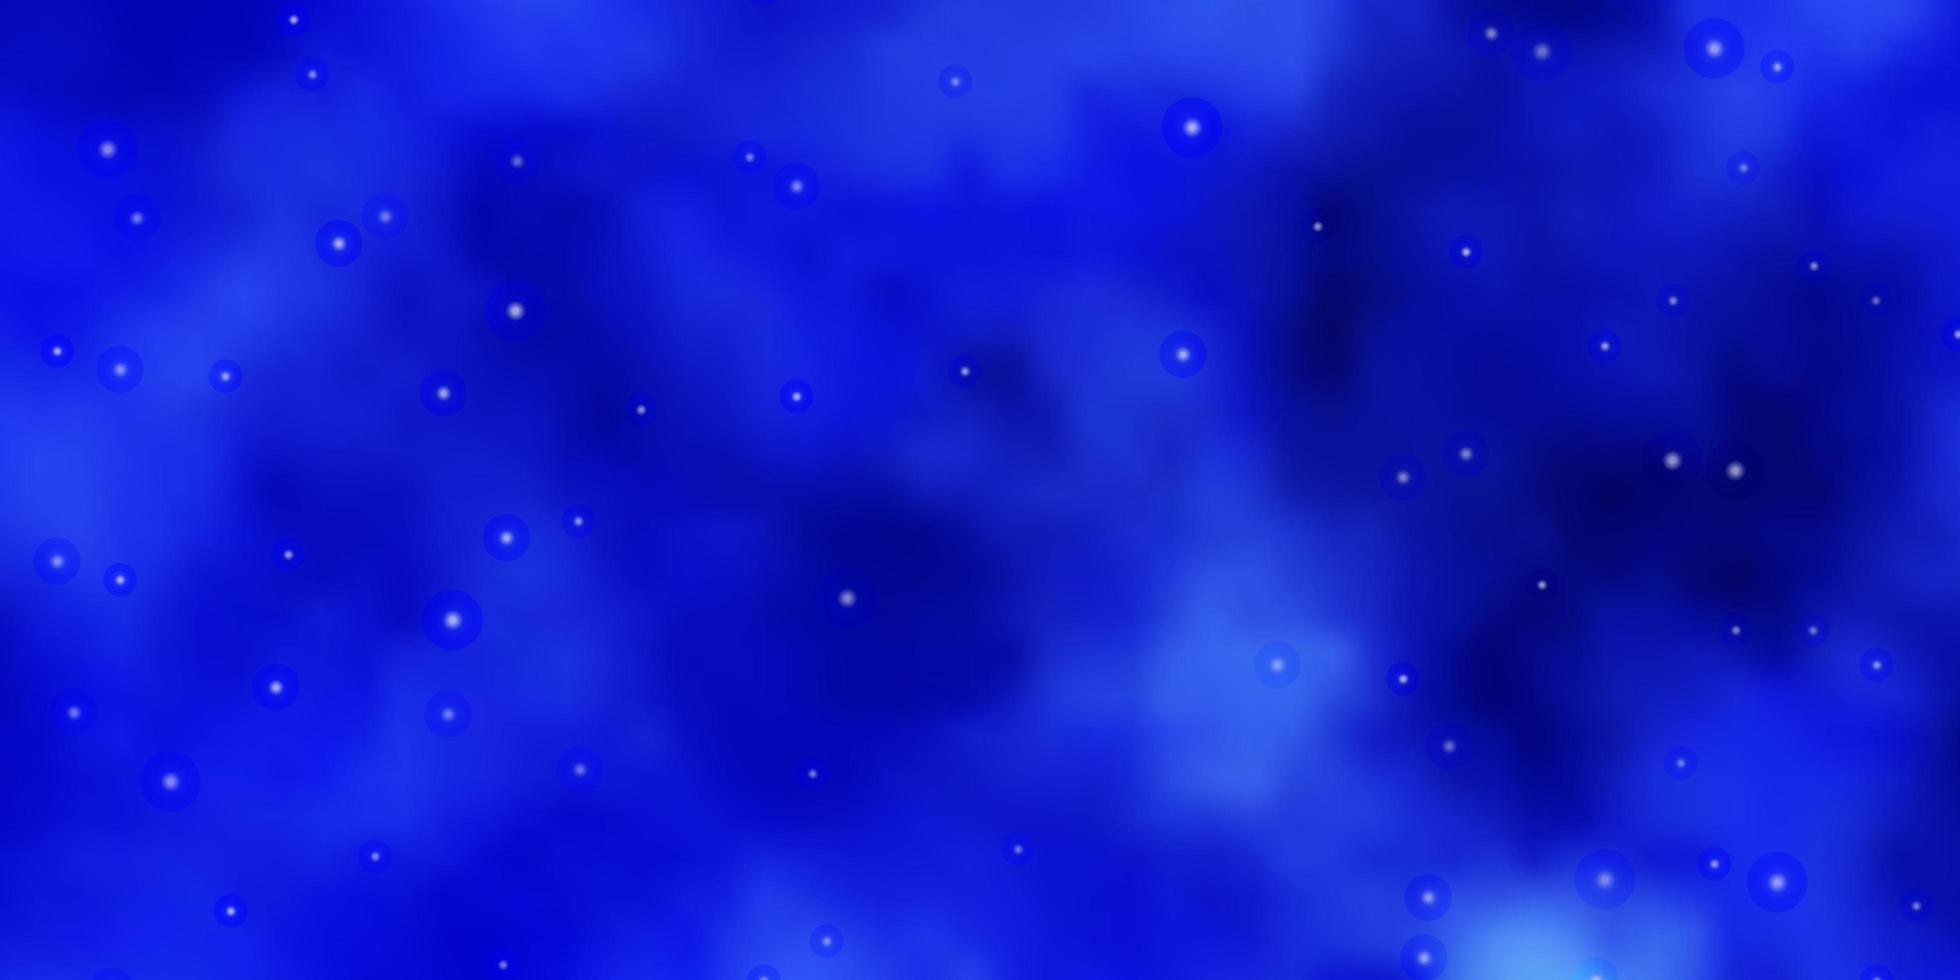 lichtblauw vectorsjabloon met neonsterren decoratieve afbeelding met sterren op abstract sjabloon beste ontwerp voor uw advertentieposterbanner vector